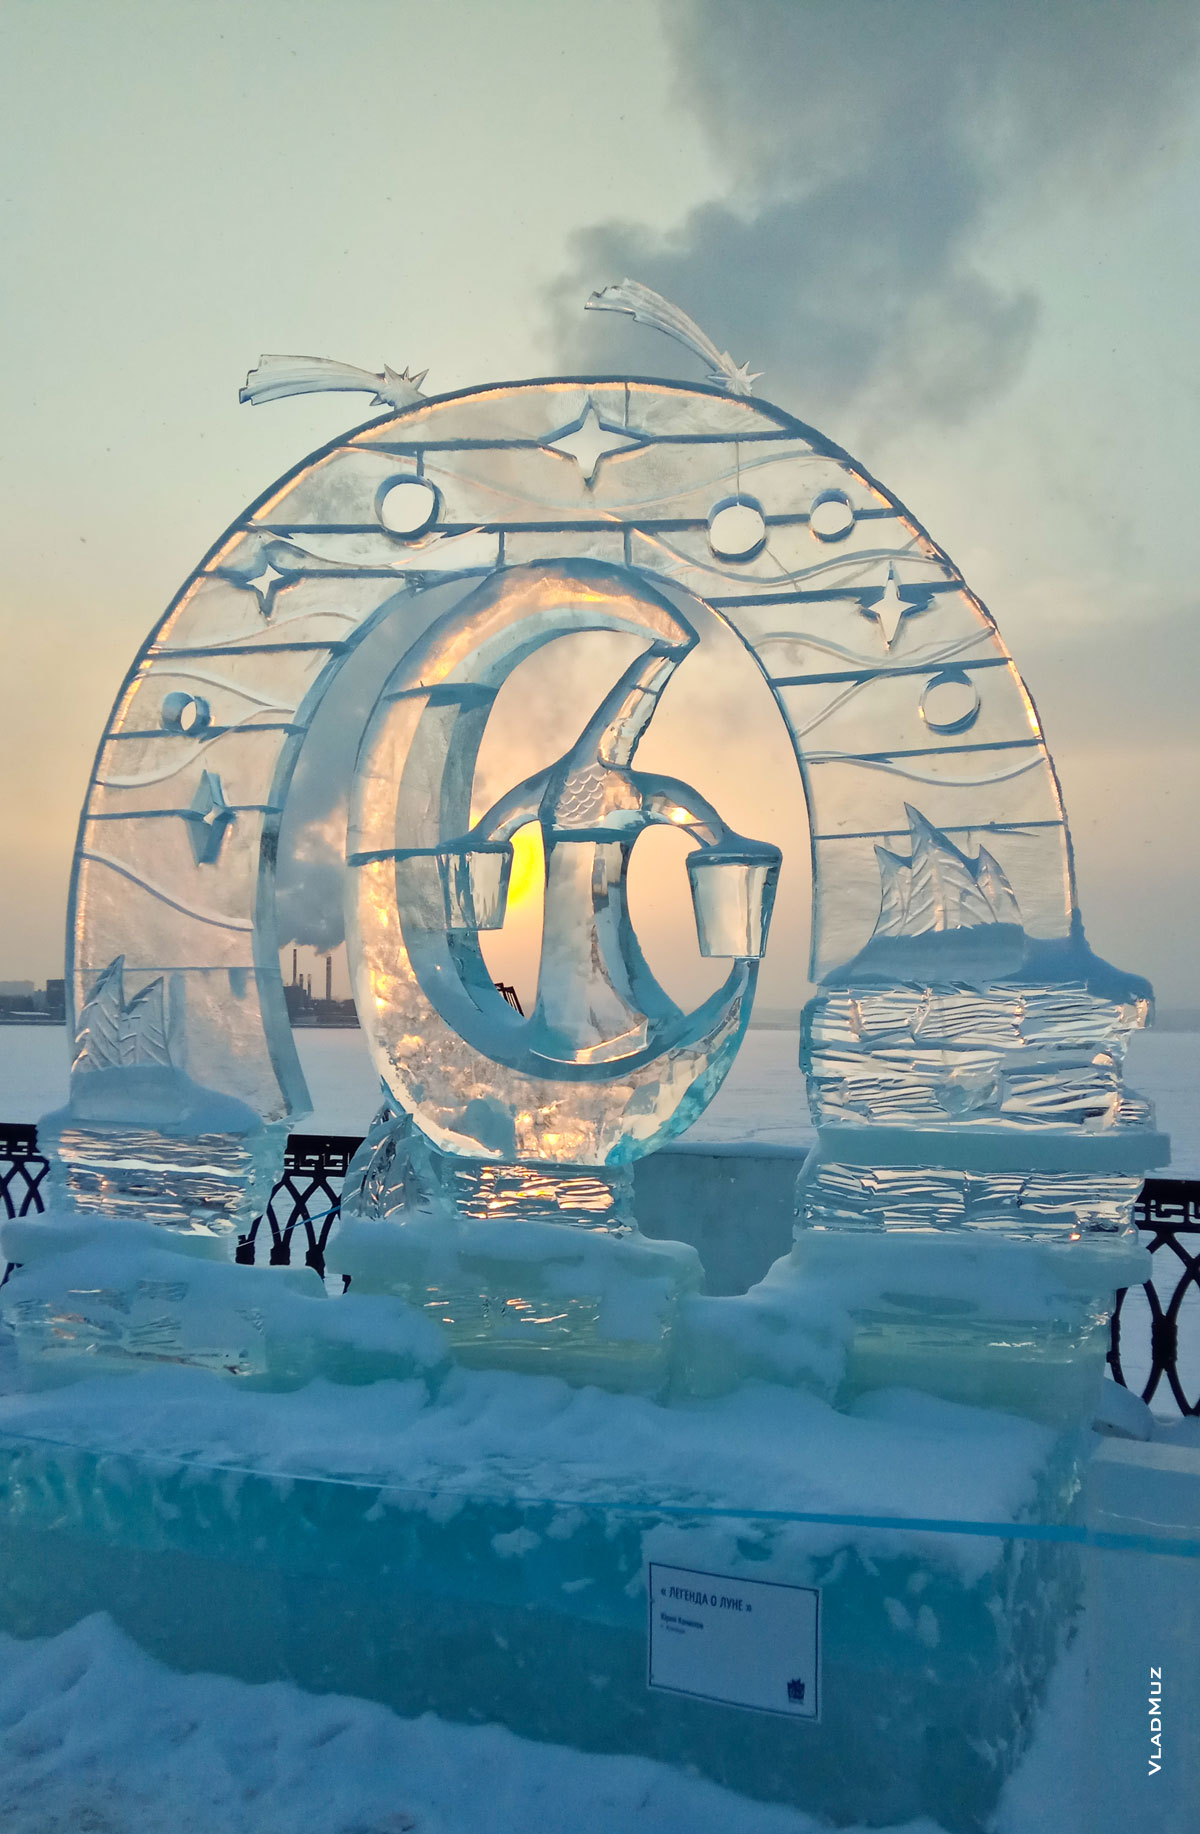 Ижевск, фестиваль «Удмуртский лед»: фото ледовой скульптуры «Легенда о Луне» в лучах заходящего солнца